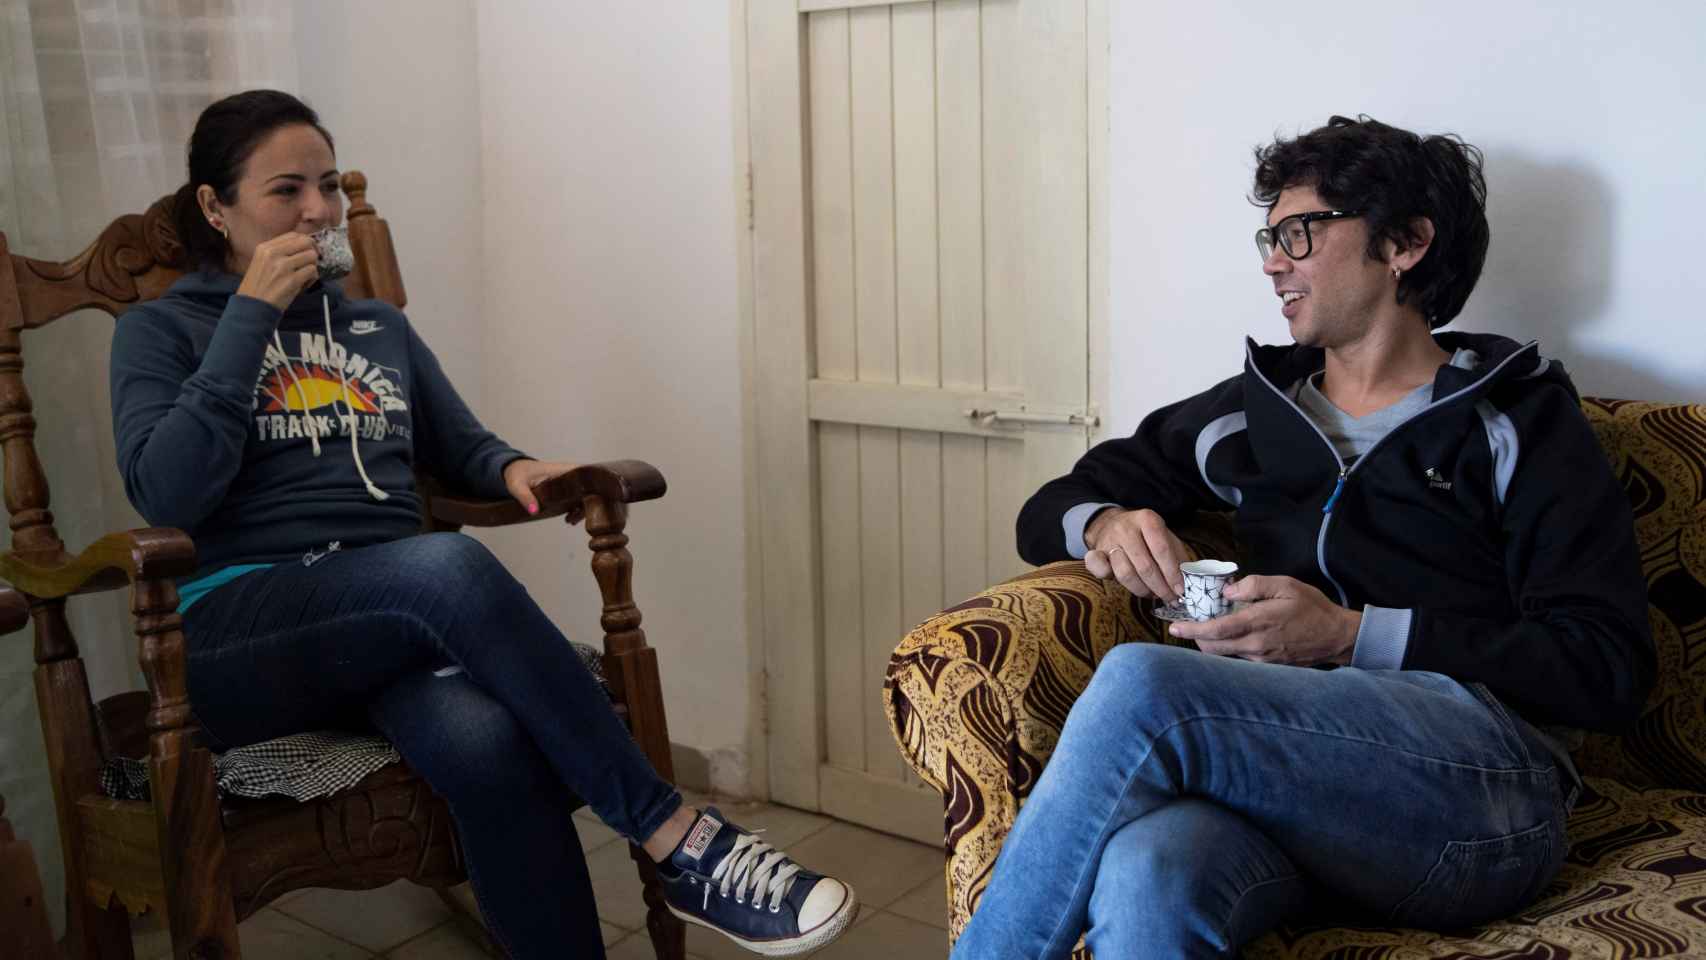 El dramaturgo cubano Yunior García, líder del grupo opositor Archipiélago, toma café junto a su esposa, Dayana Prieto, en su casa de La Habana.